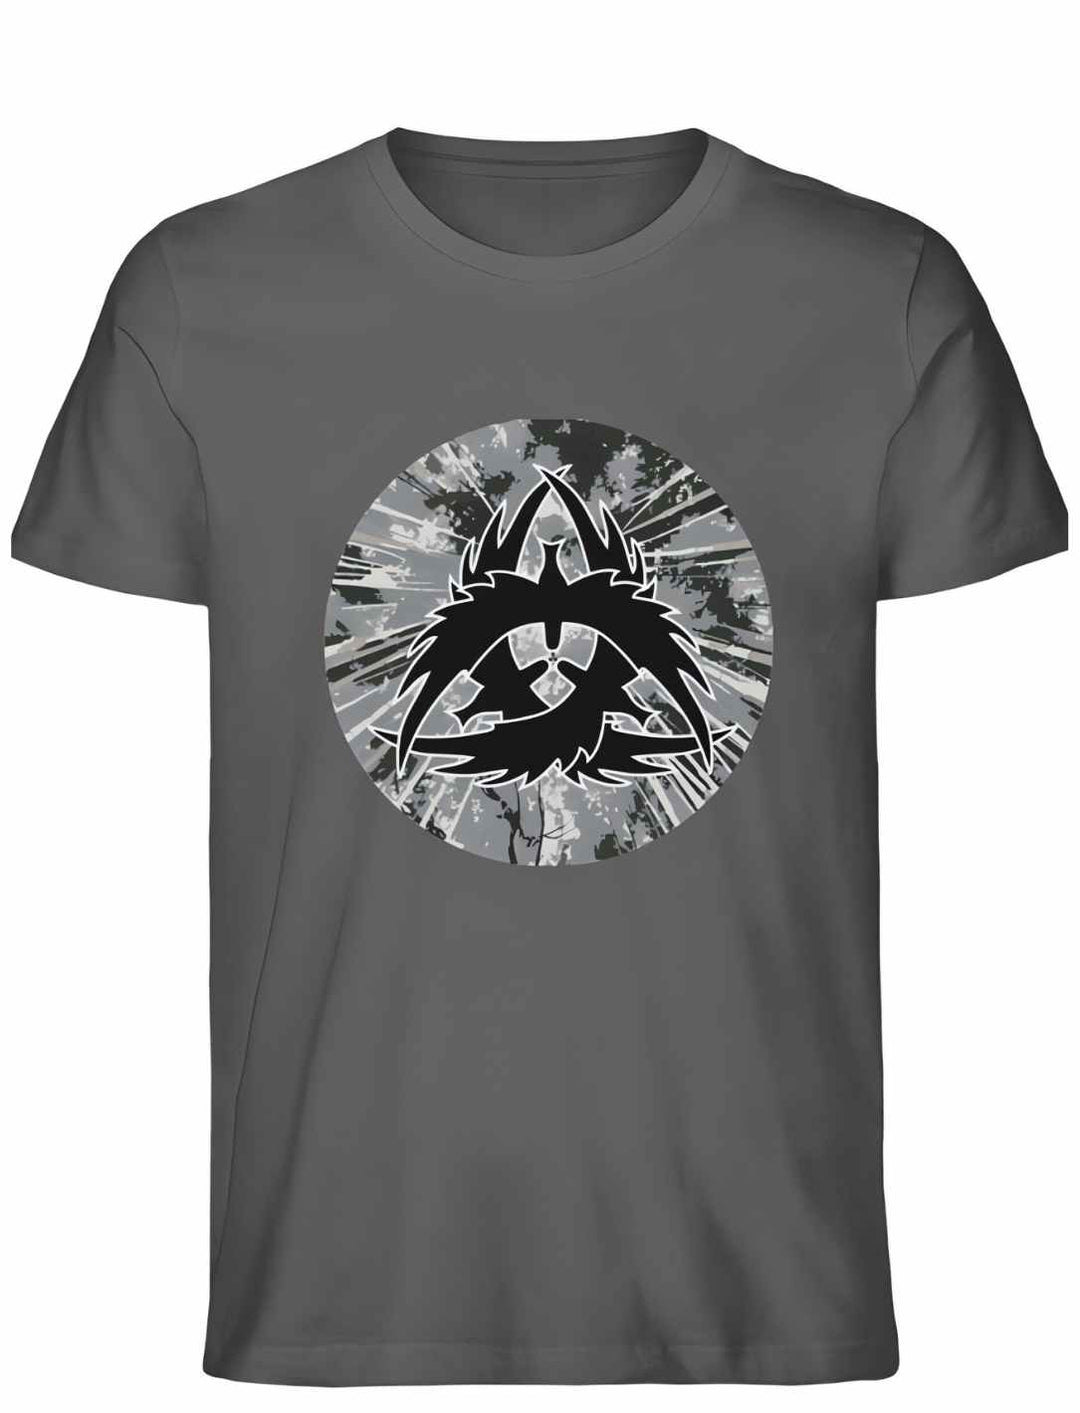 Unisex Organic Anthrazit "The Raven Clan" T-Shirt - Authentische nordische Symbolik in Premium Qualität